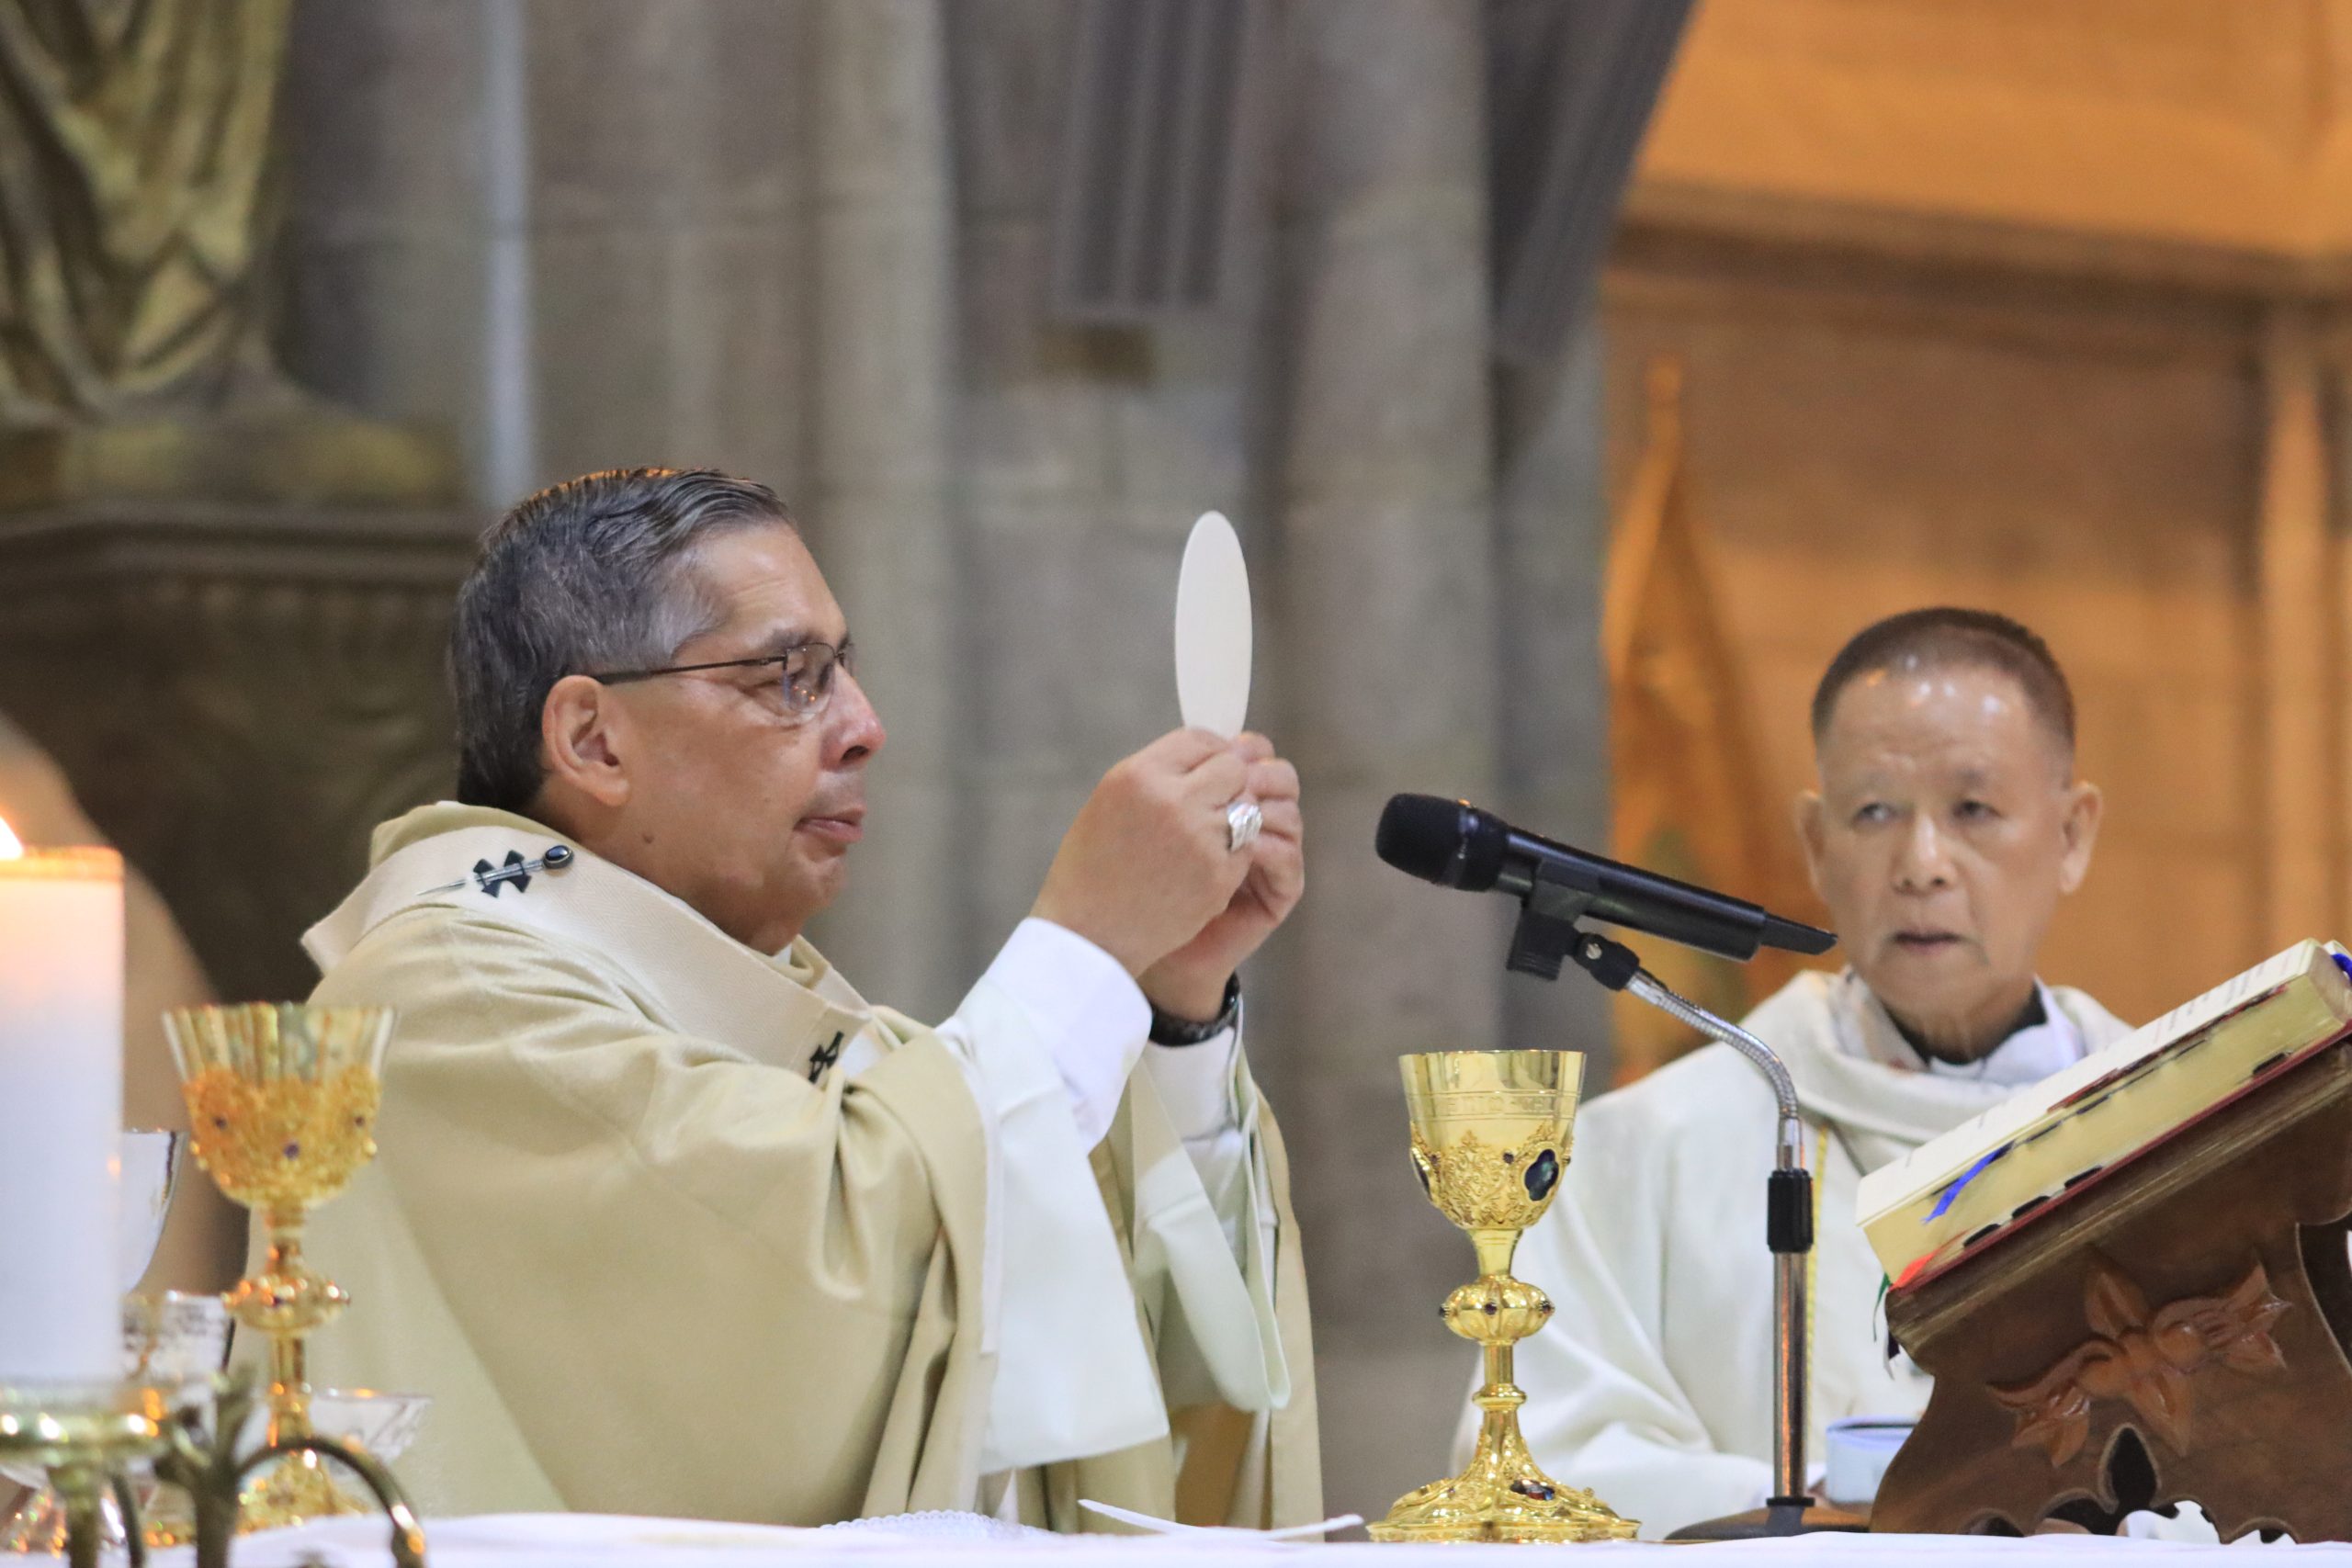 ACIPRENSA – Arzobispo de Quito: El Corazón traspasado de Jesús sana el odio y la violencia.